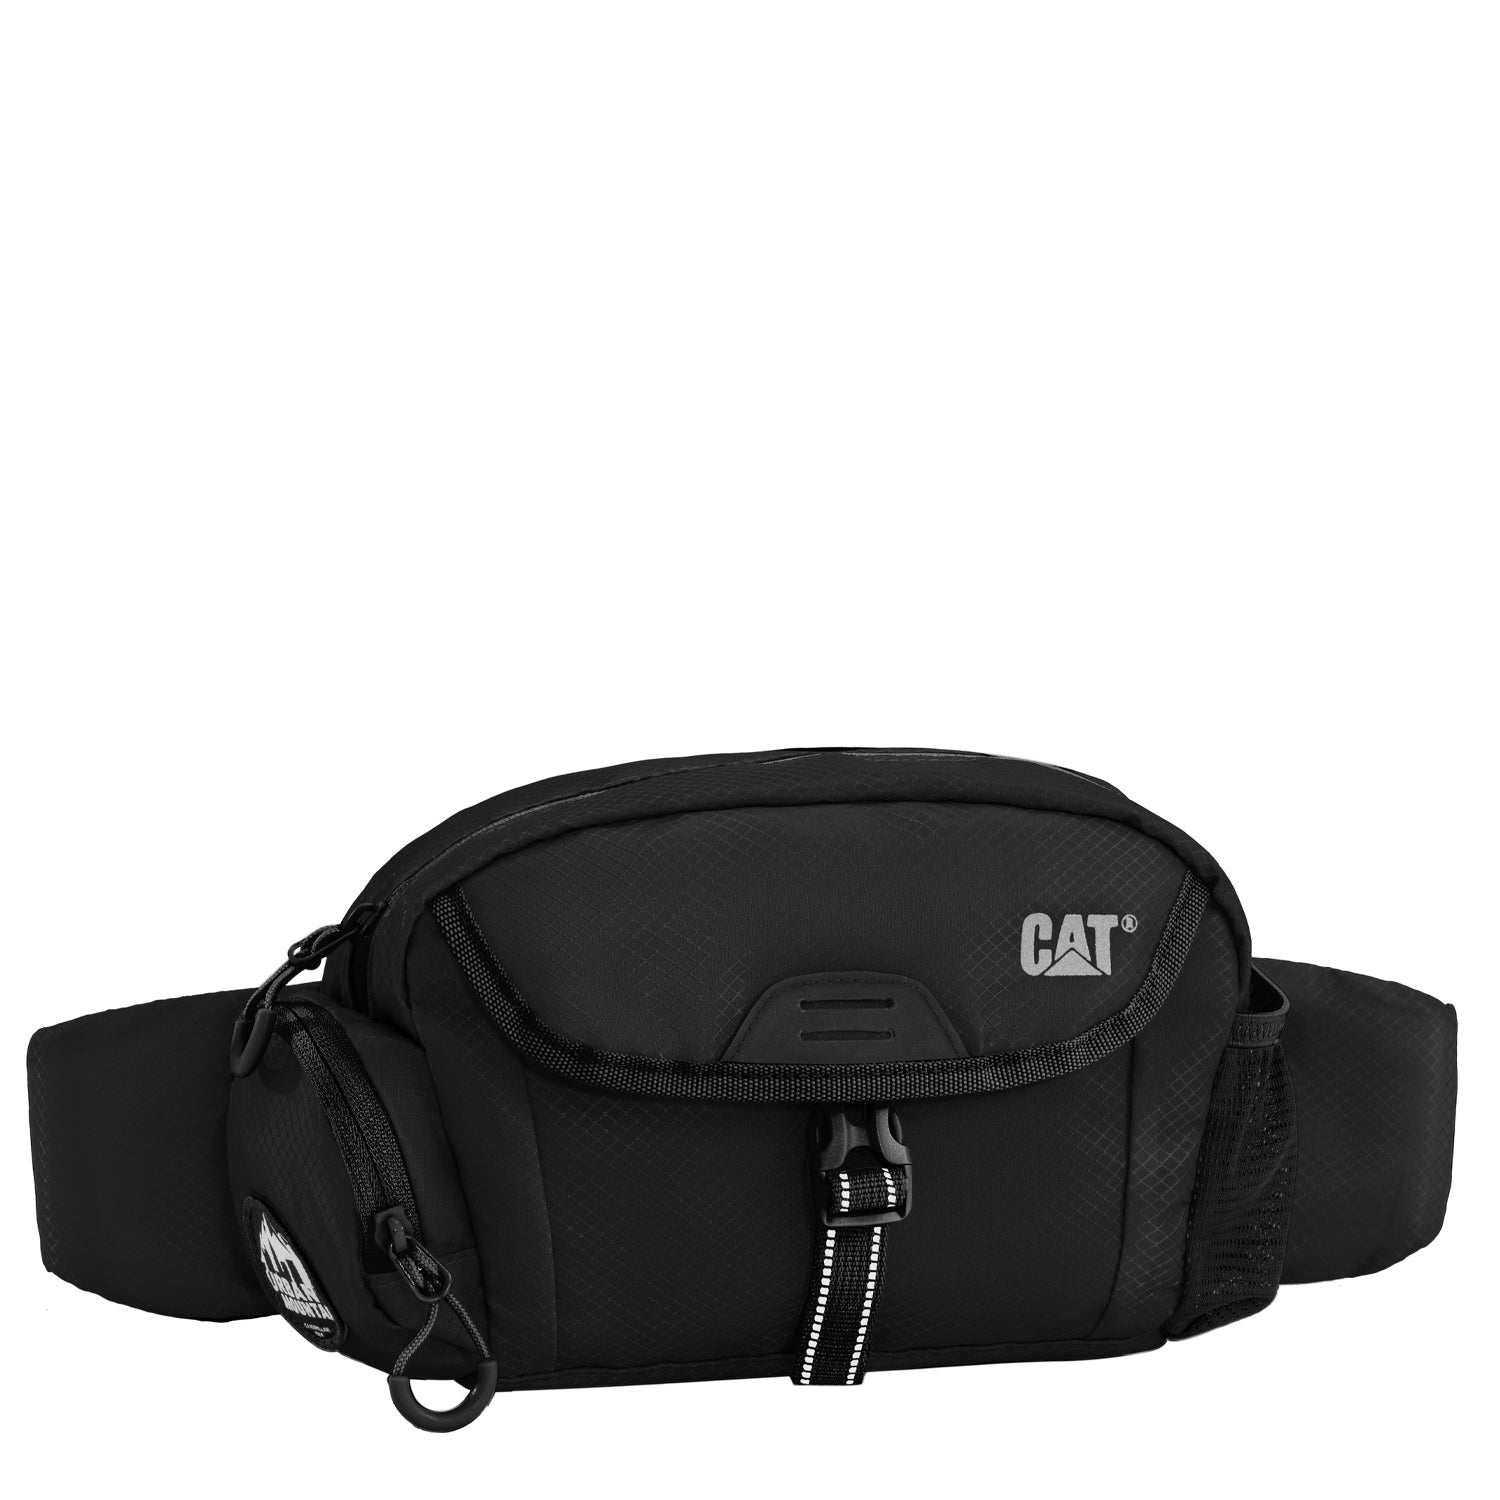 CAT - FUJI Waist bumbag - Black-1